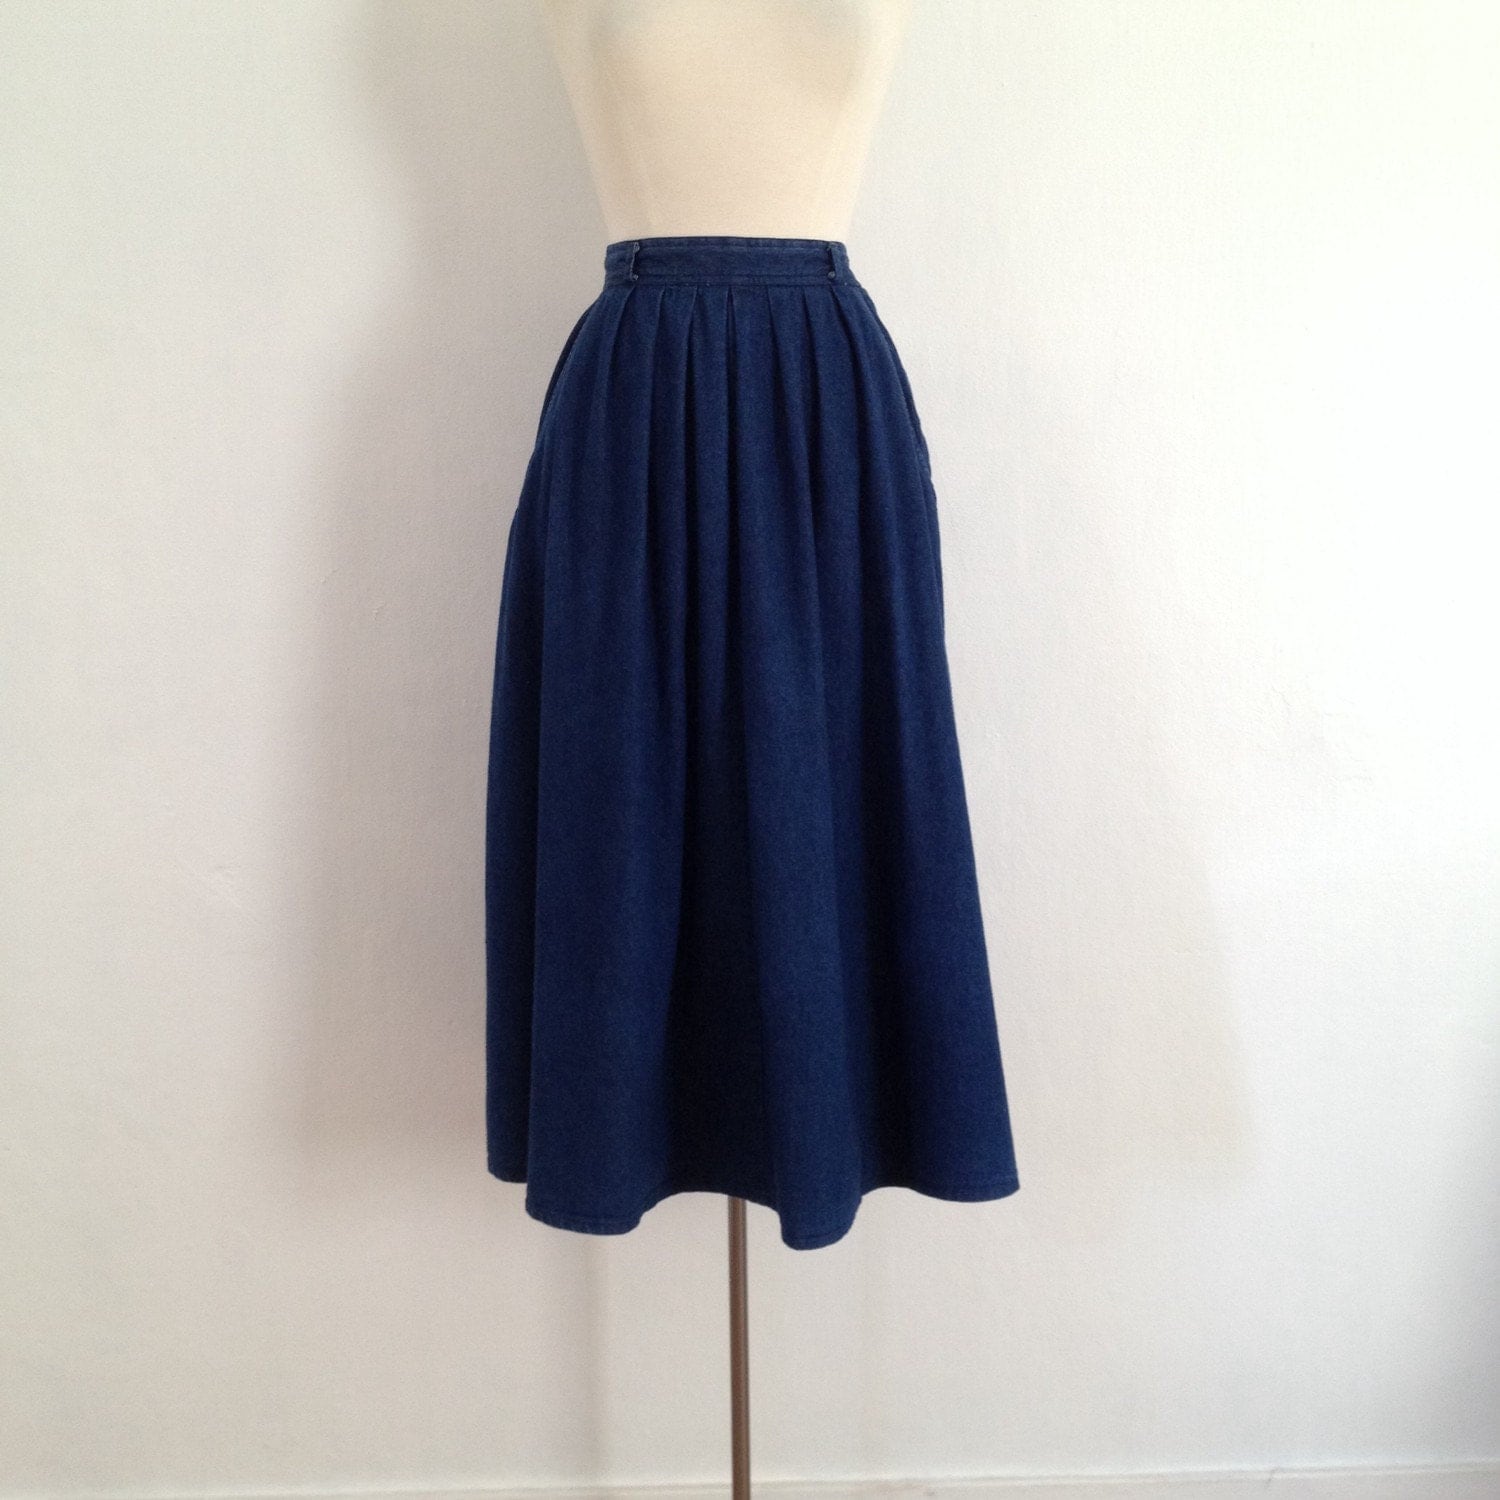 full denim skirt / denim midi skirt / vintage jean skirt